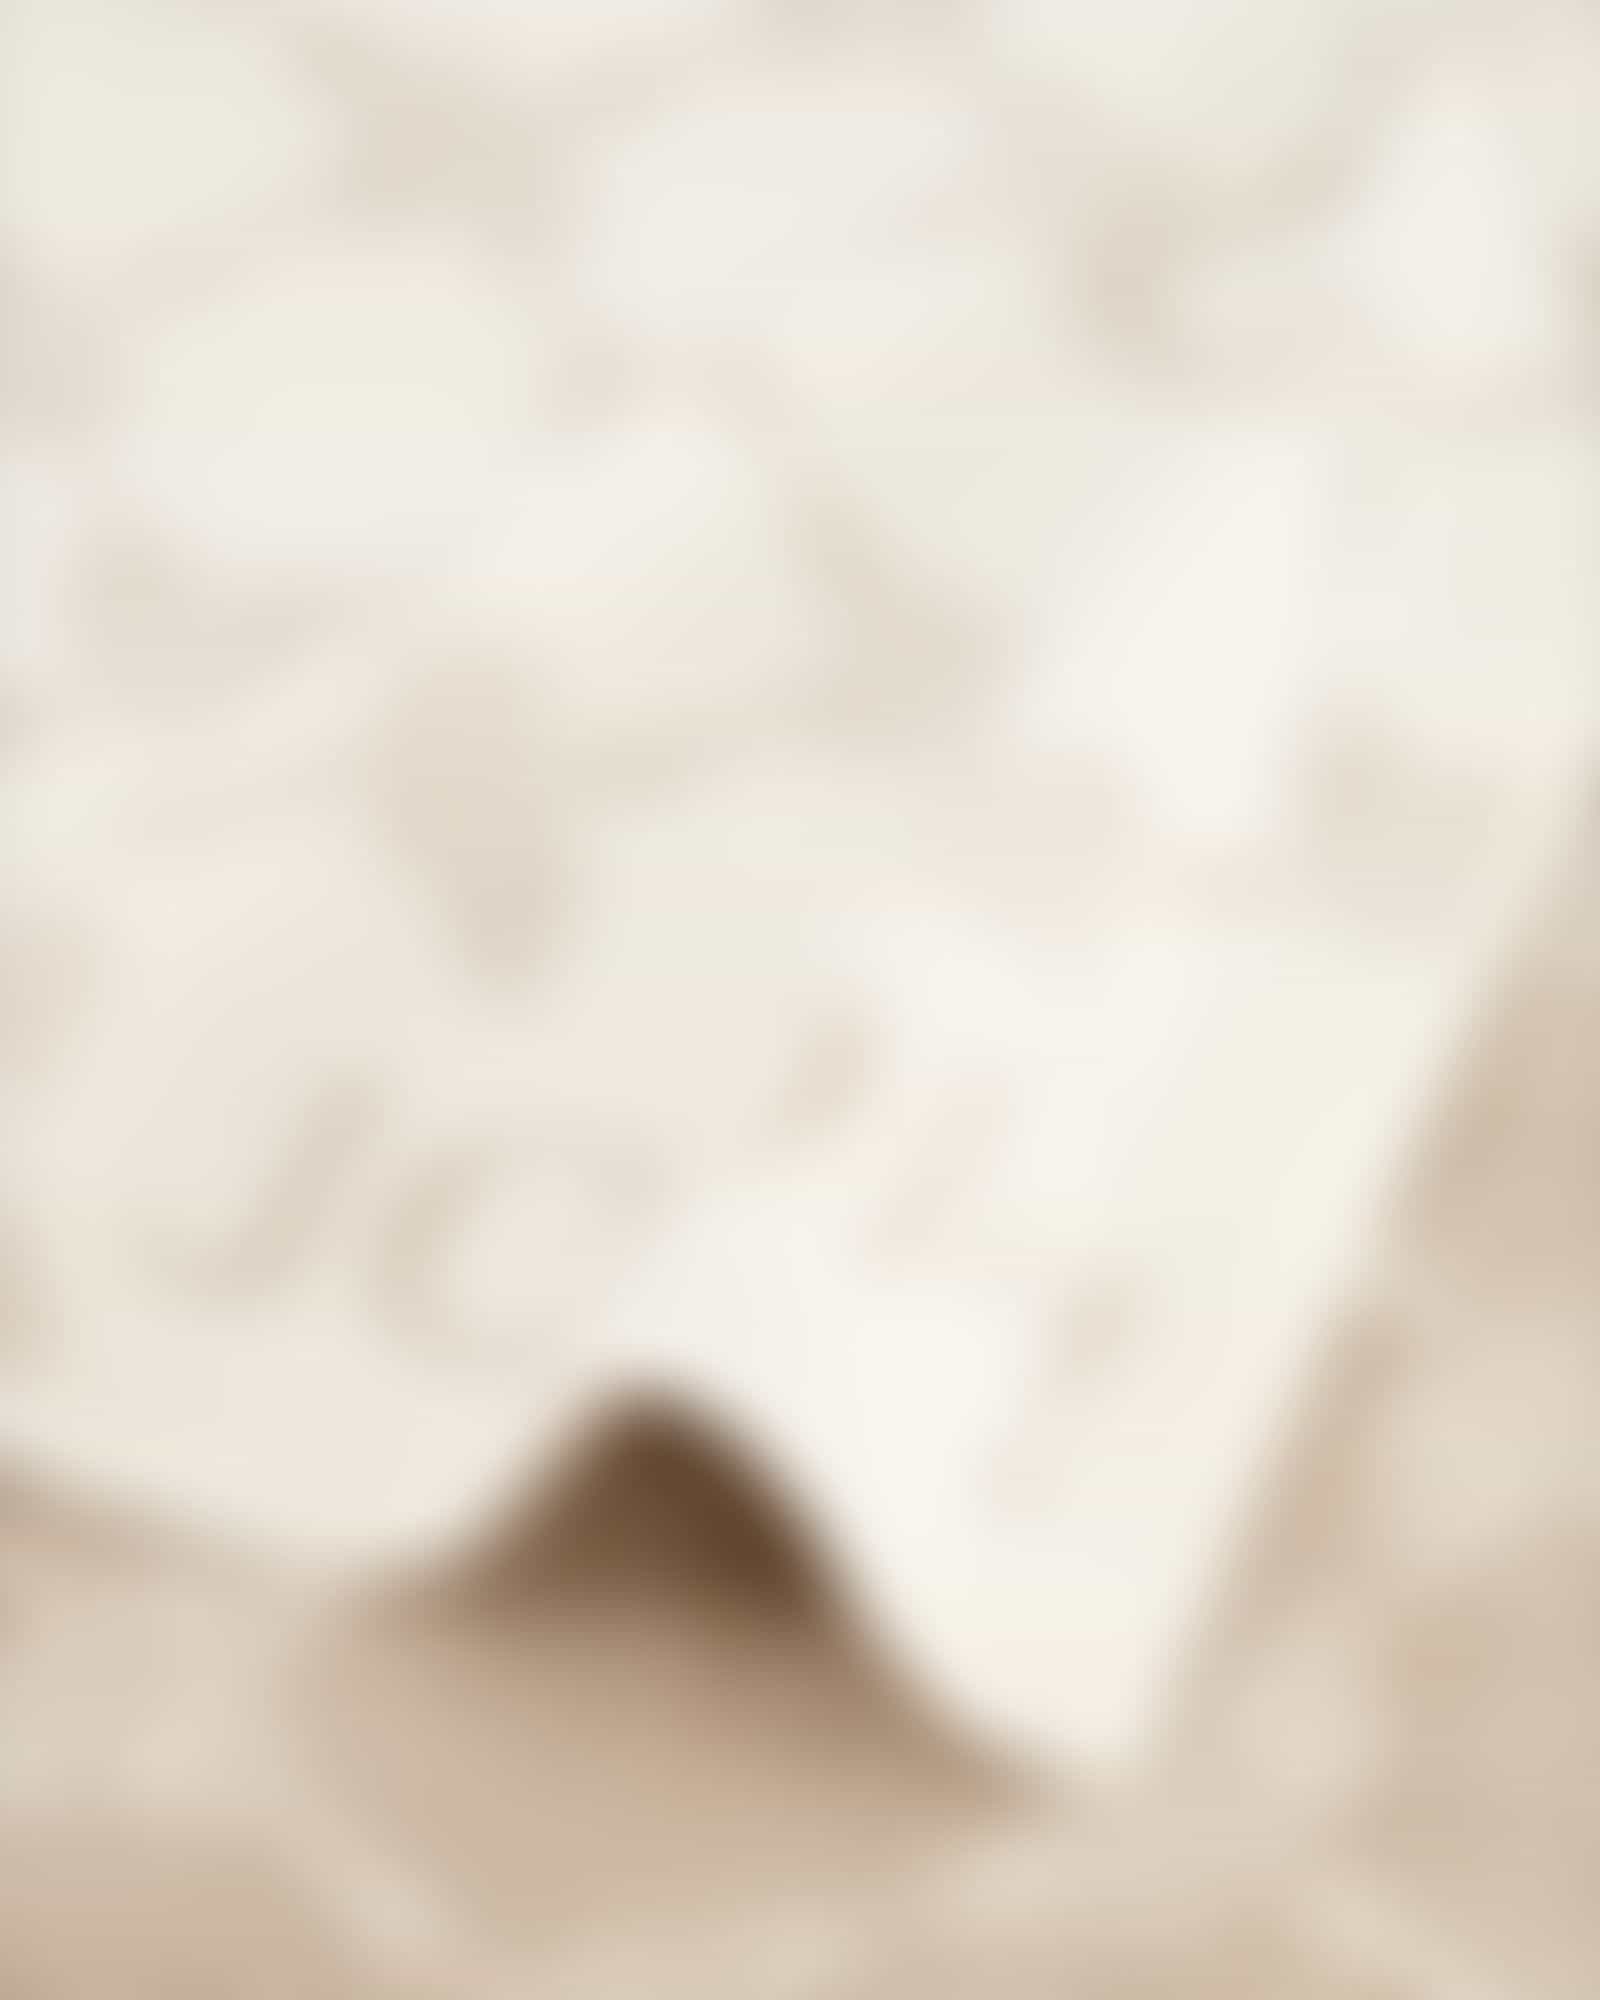 JOOP! Classic - Cornflower 1611 - Farbe: Creme - 36 - Waschhandschuh 16x22 cm Detailbild 1